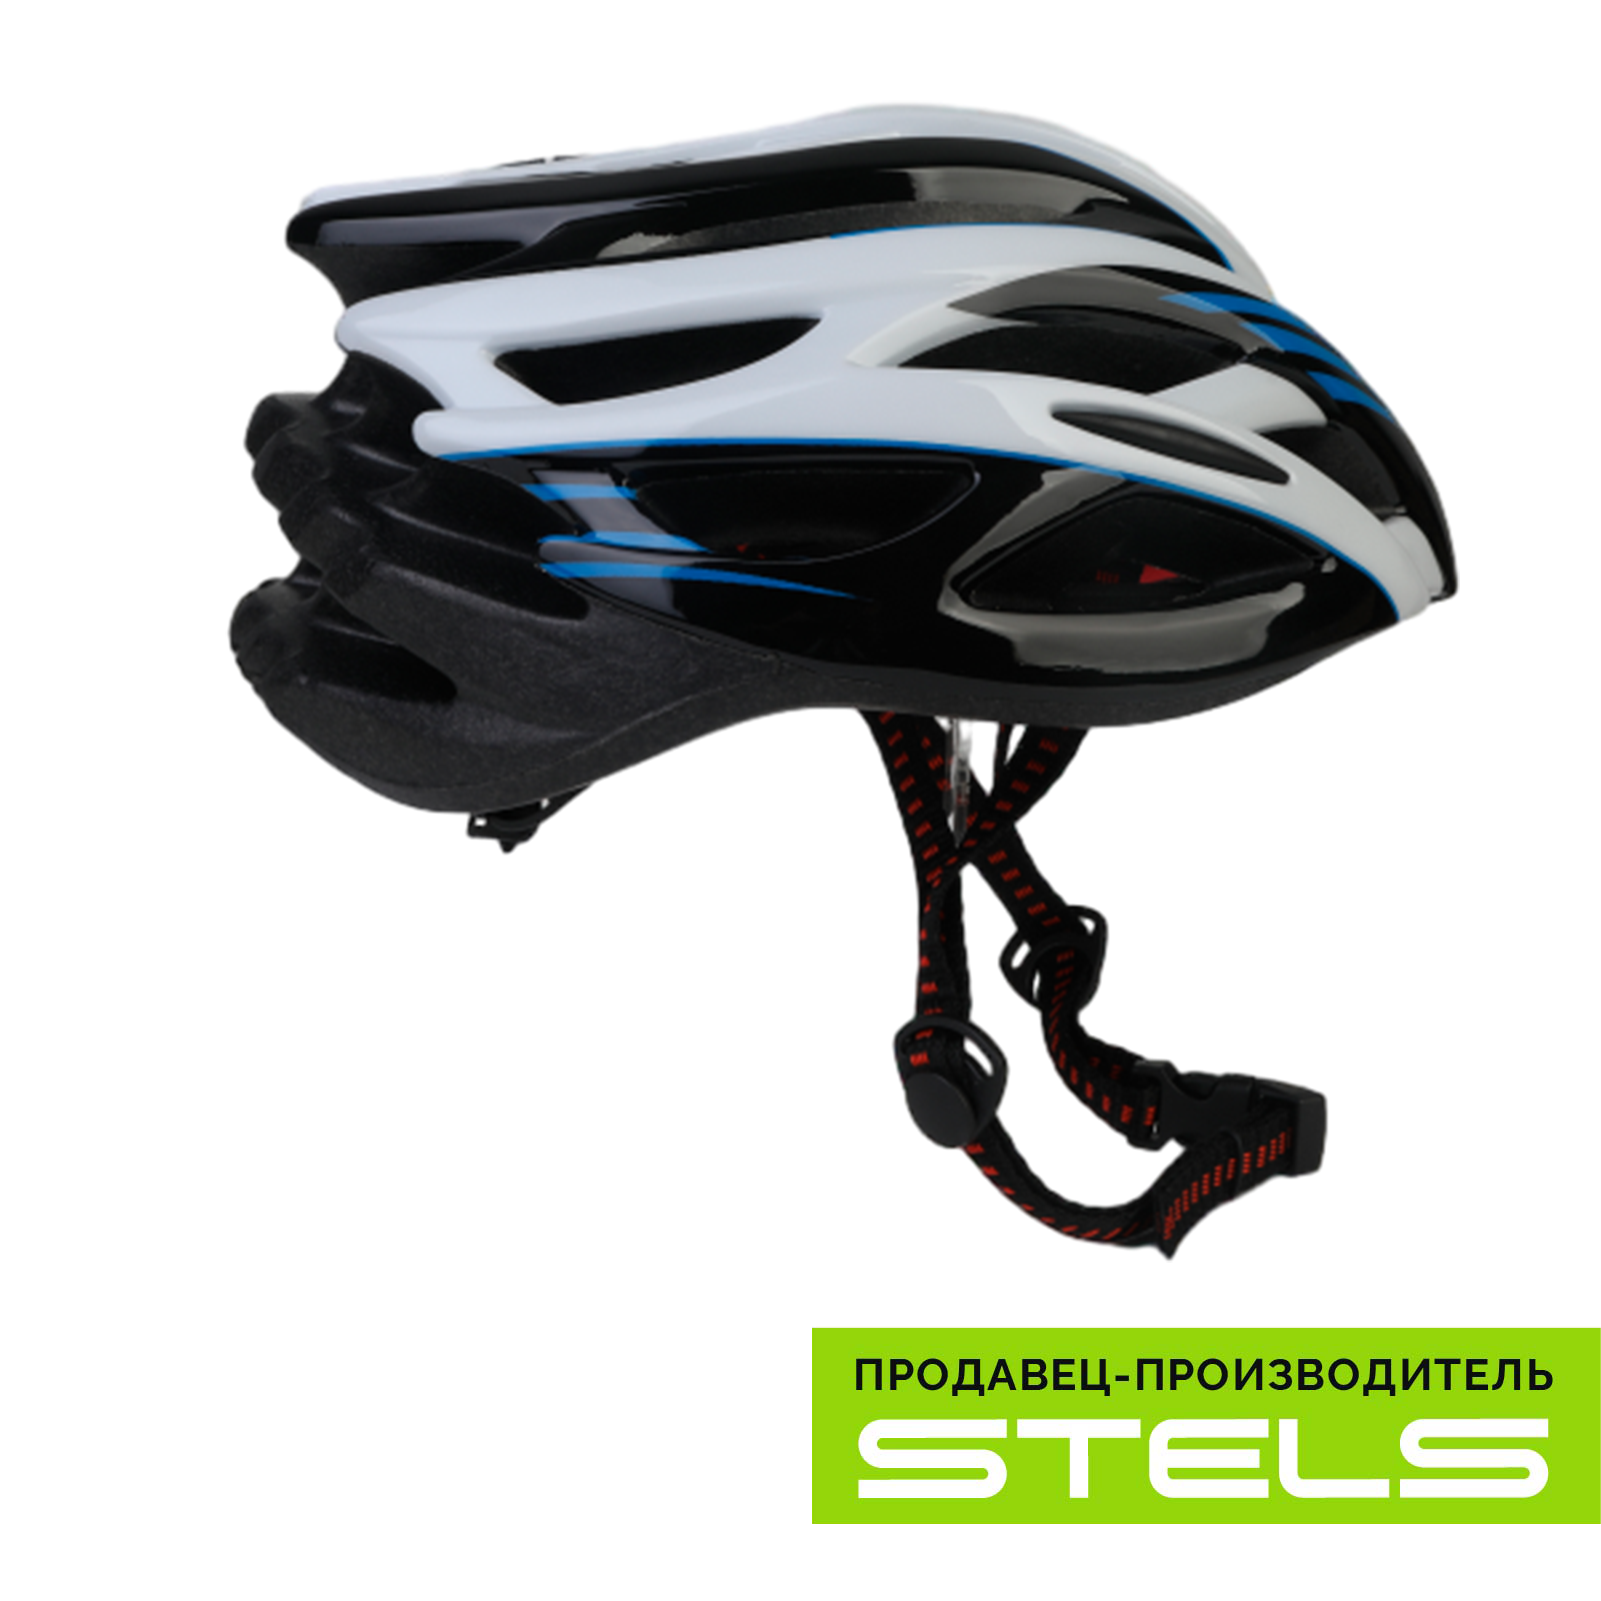 Шлем защитный для катания на велосипеде FSD-HL008 (in-mold) сине-чёрно-белый, размер L VELOSALE